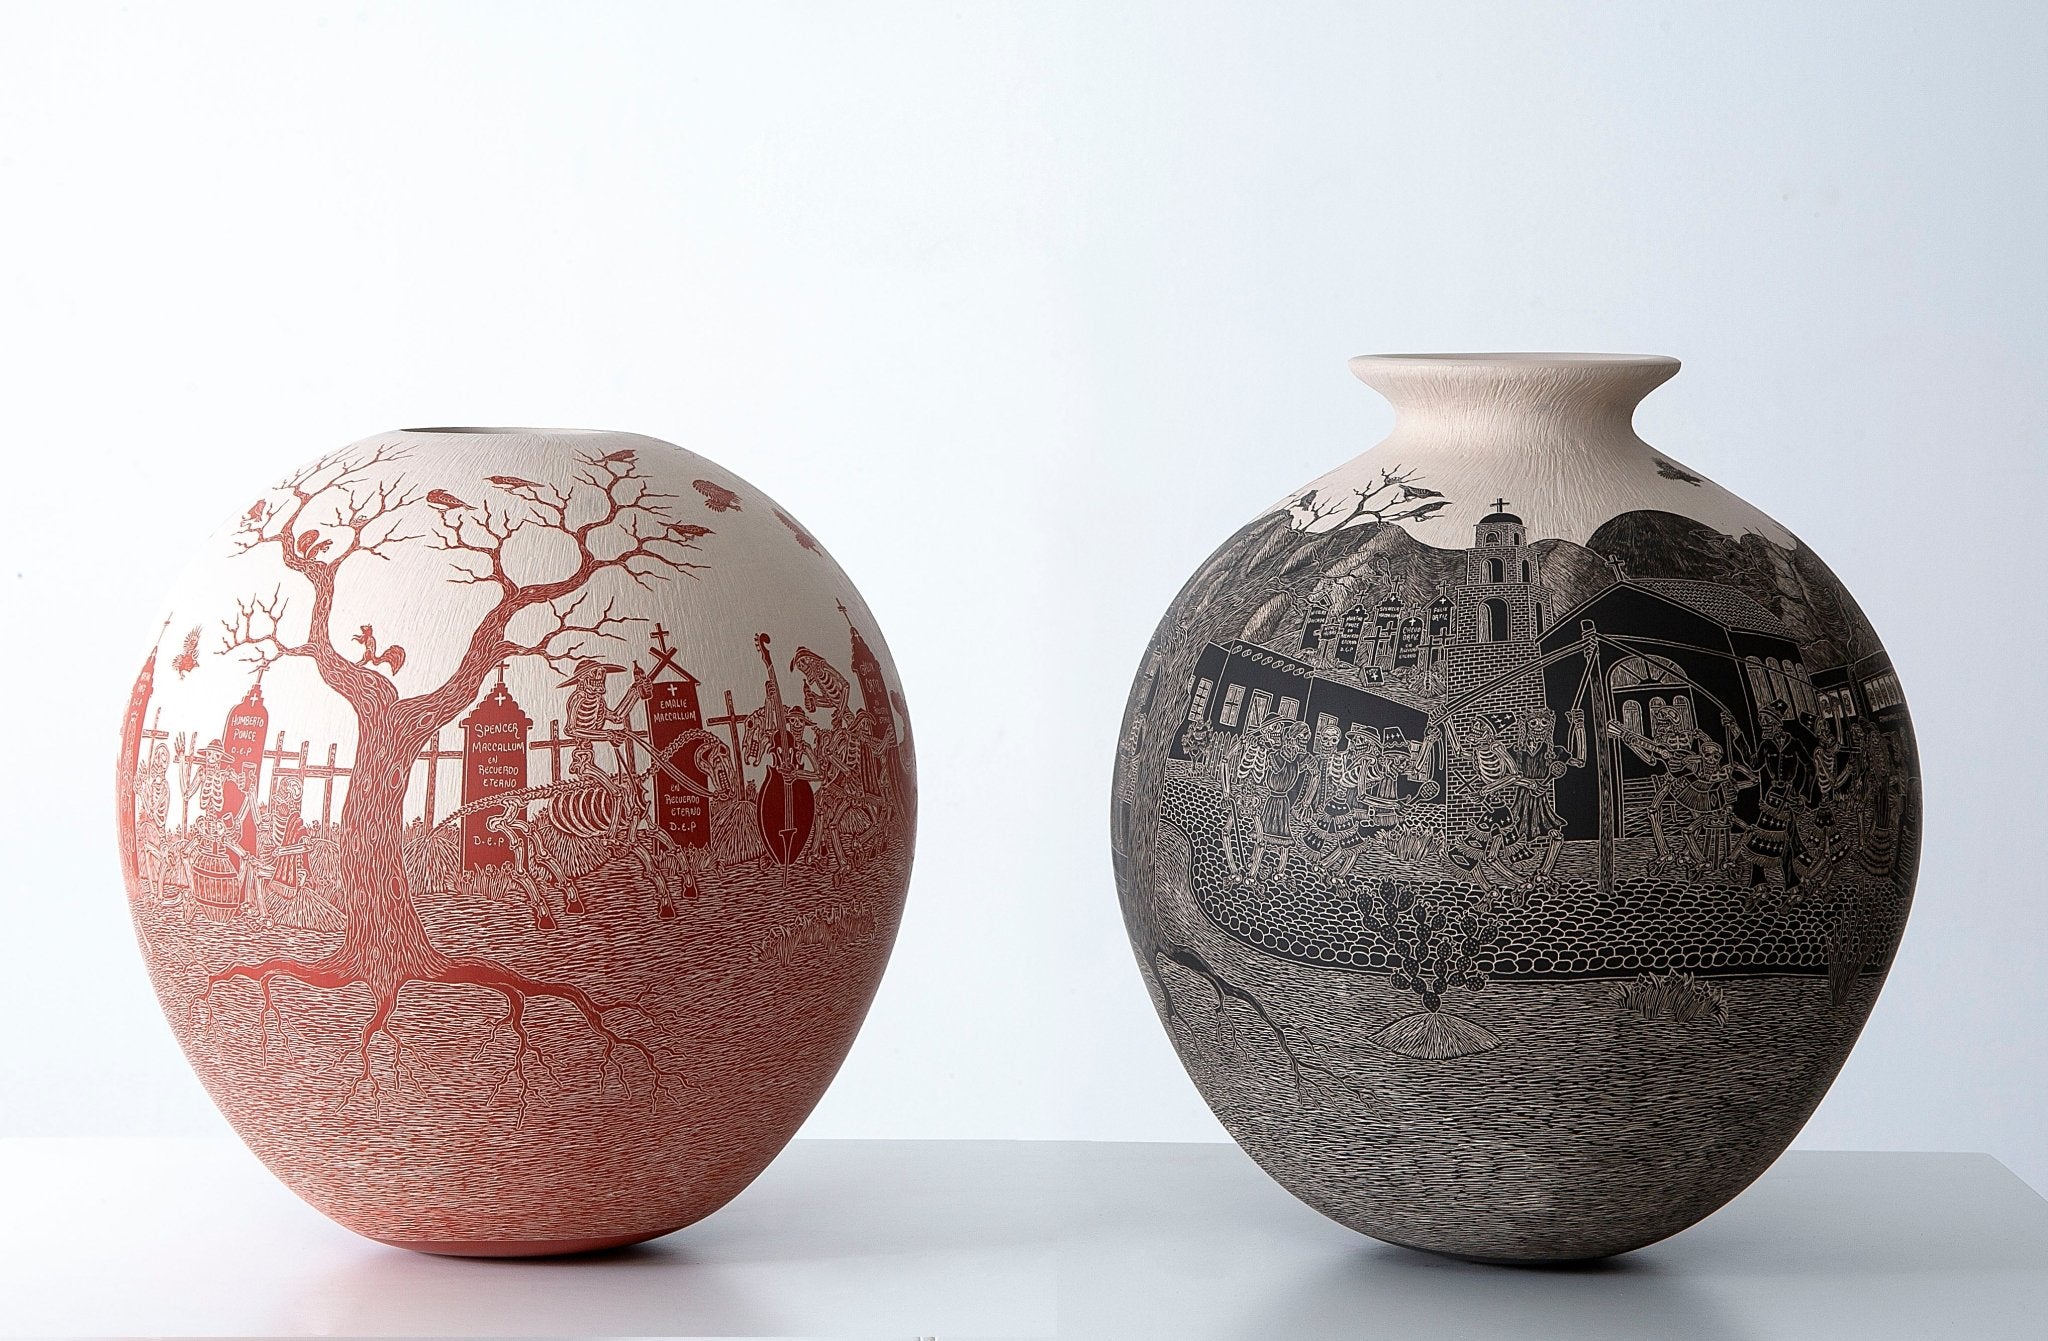 Ceramica Mata Ortiz - Giorno dei Morti - Convivialità nel Cimitero - Arte Huichol - Marakame